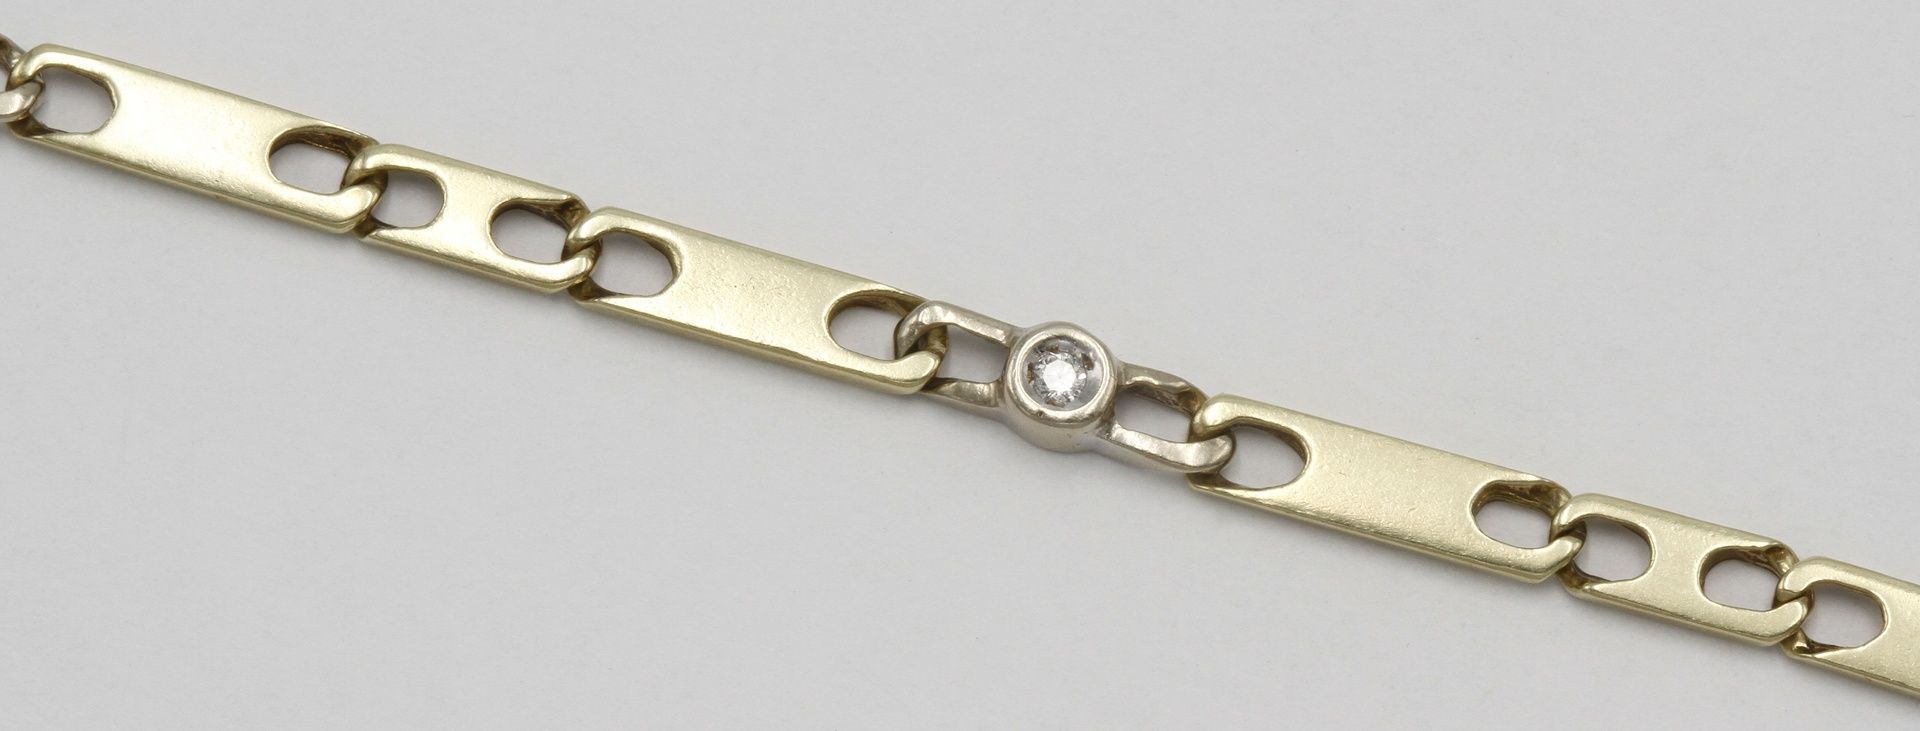 Collier und Armband mit Brillantbesatz585/- Gelbgold, Steine in Weißgoldgliedern mit Zargen gefasst, - Bild 6 aus 6